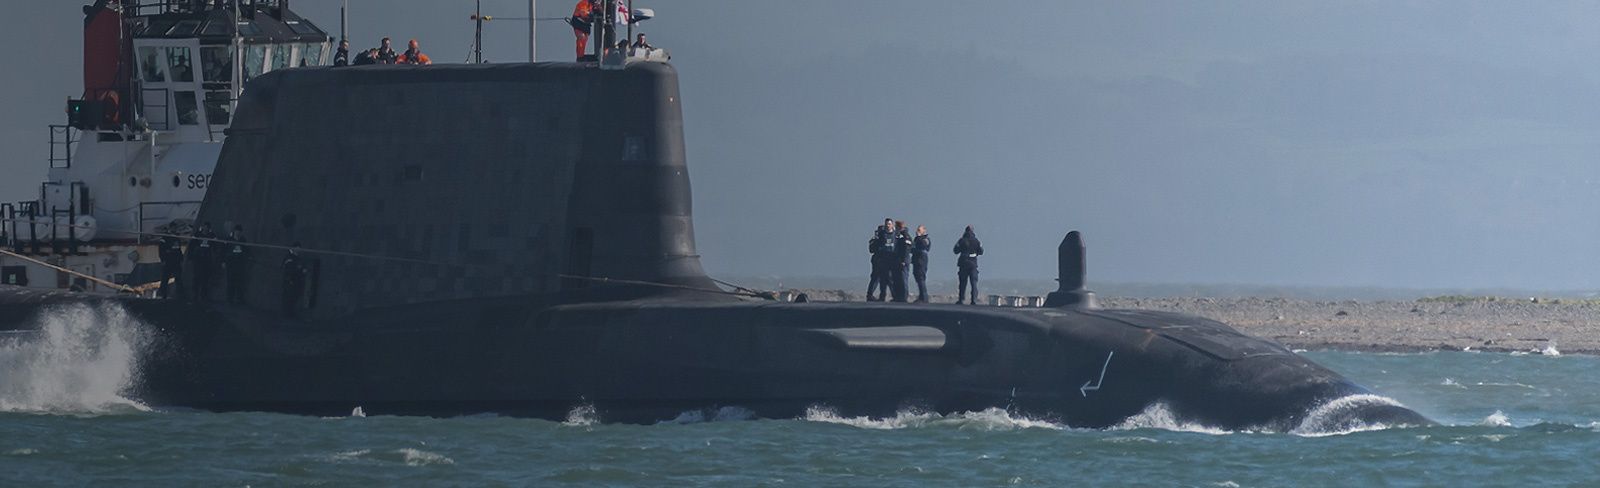 Image showing HMS Audacious Astute Class Submarine